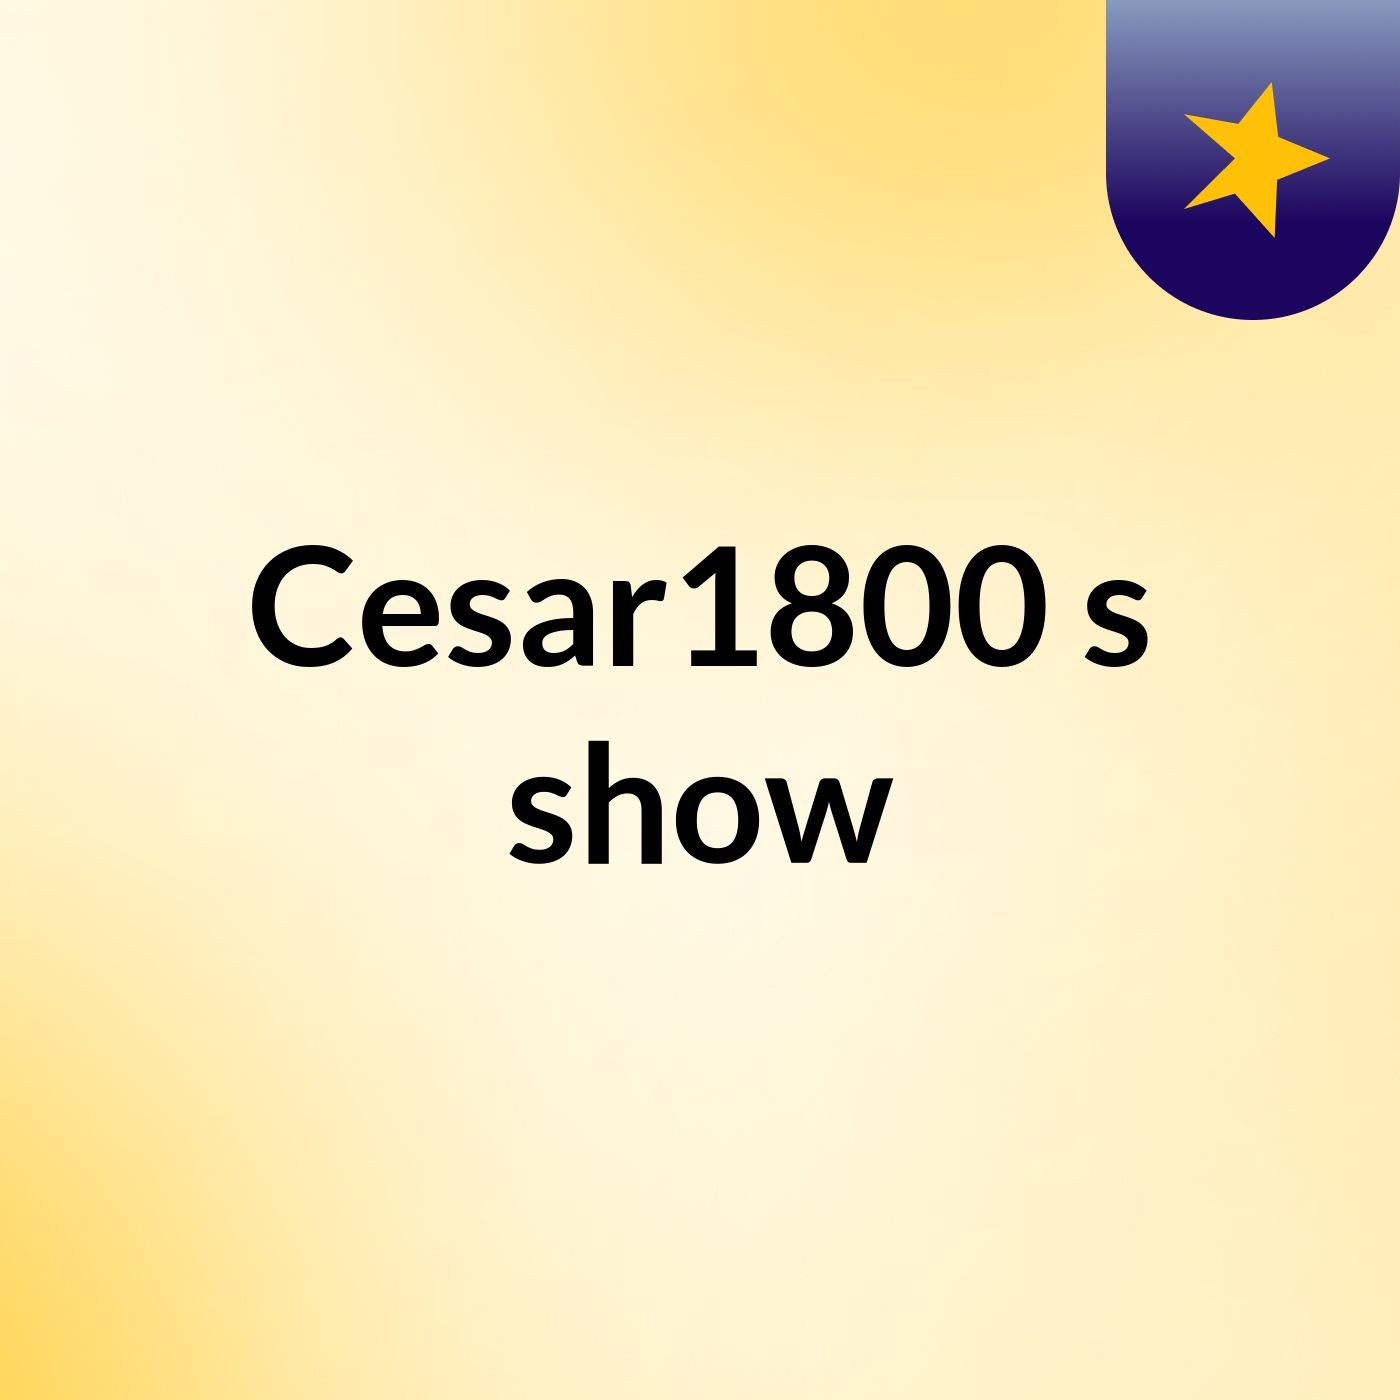 Cesar1800's show